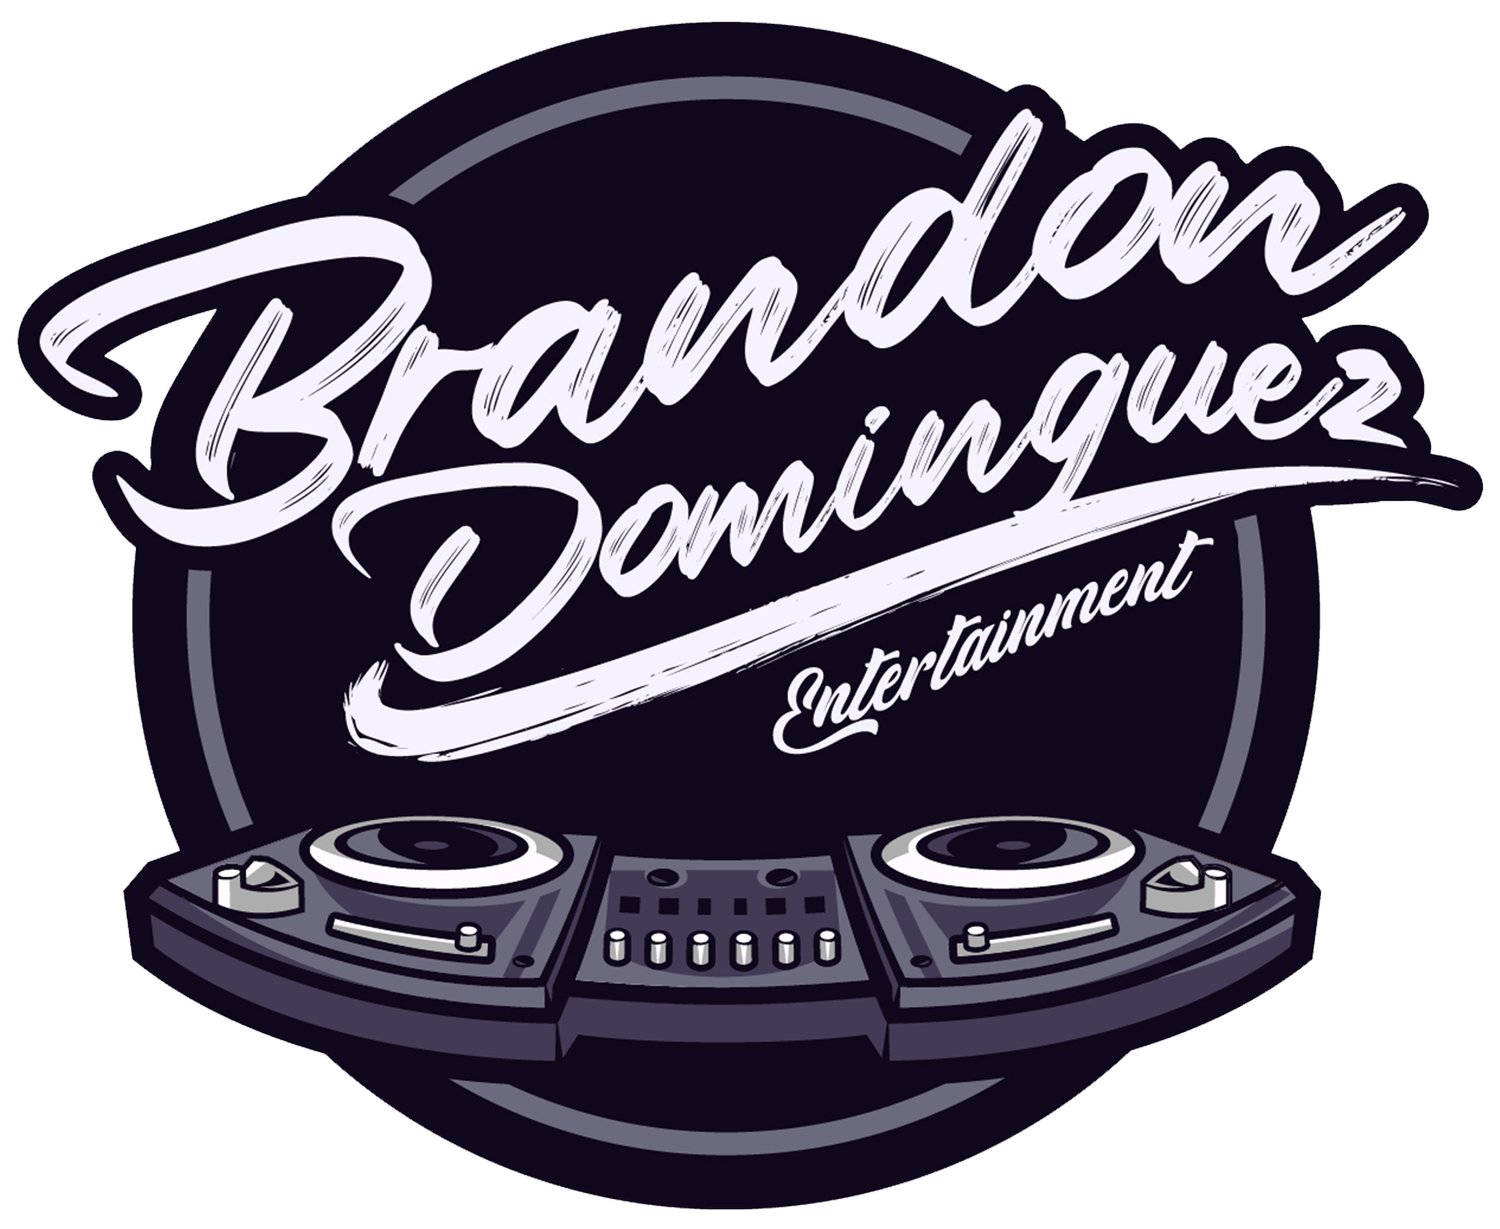 Brandon Dominguez Entertainment